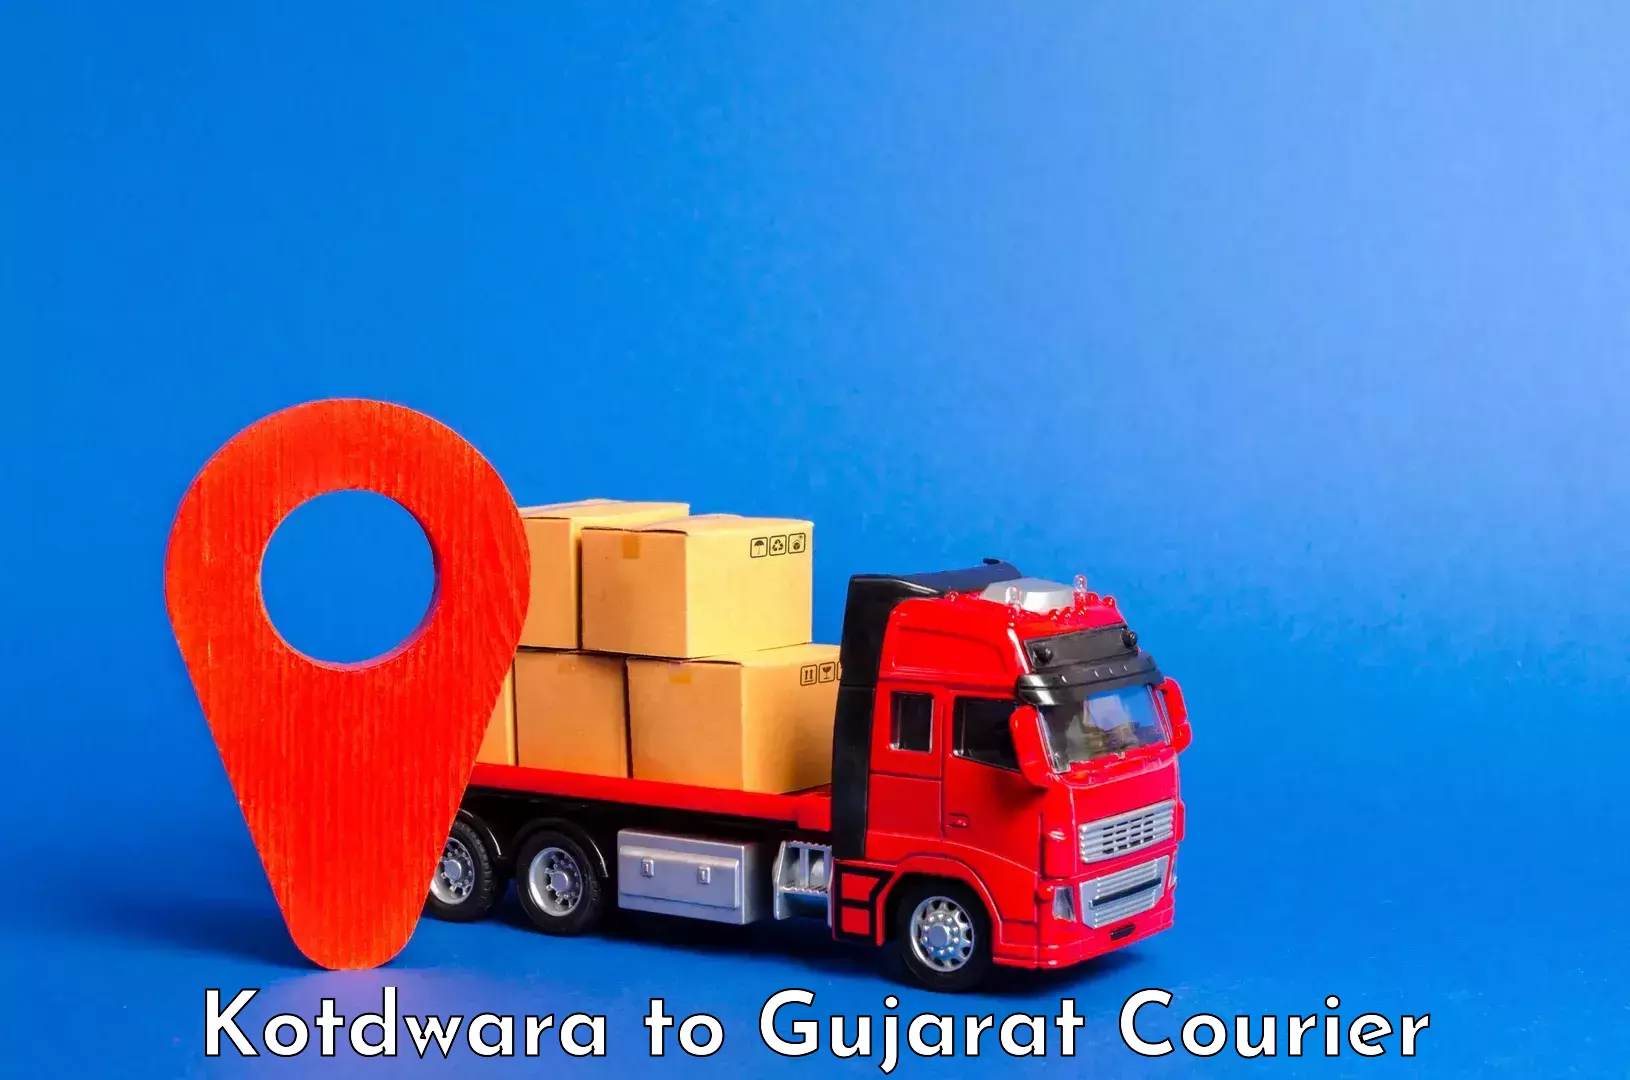 Baggage transport network Kotdwara to Gujarat